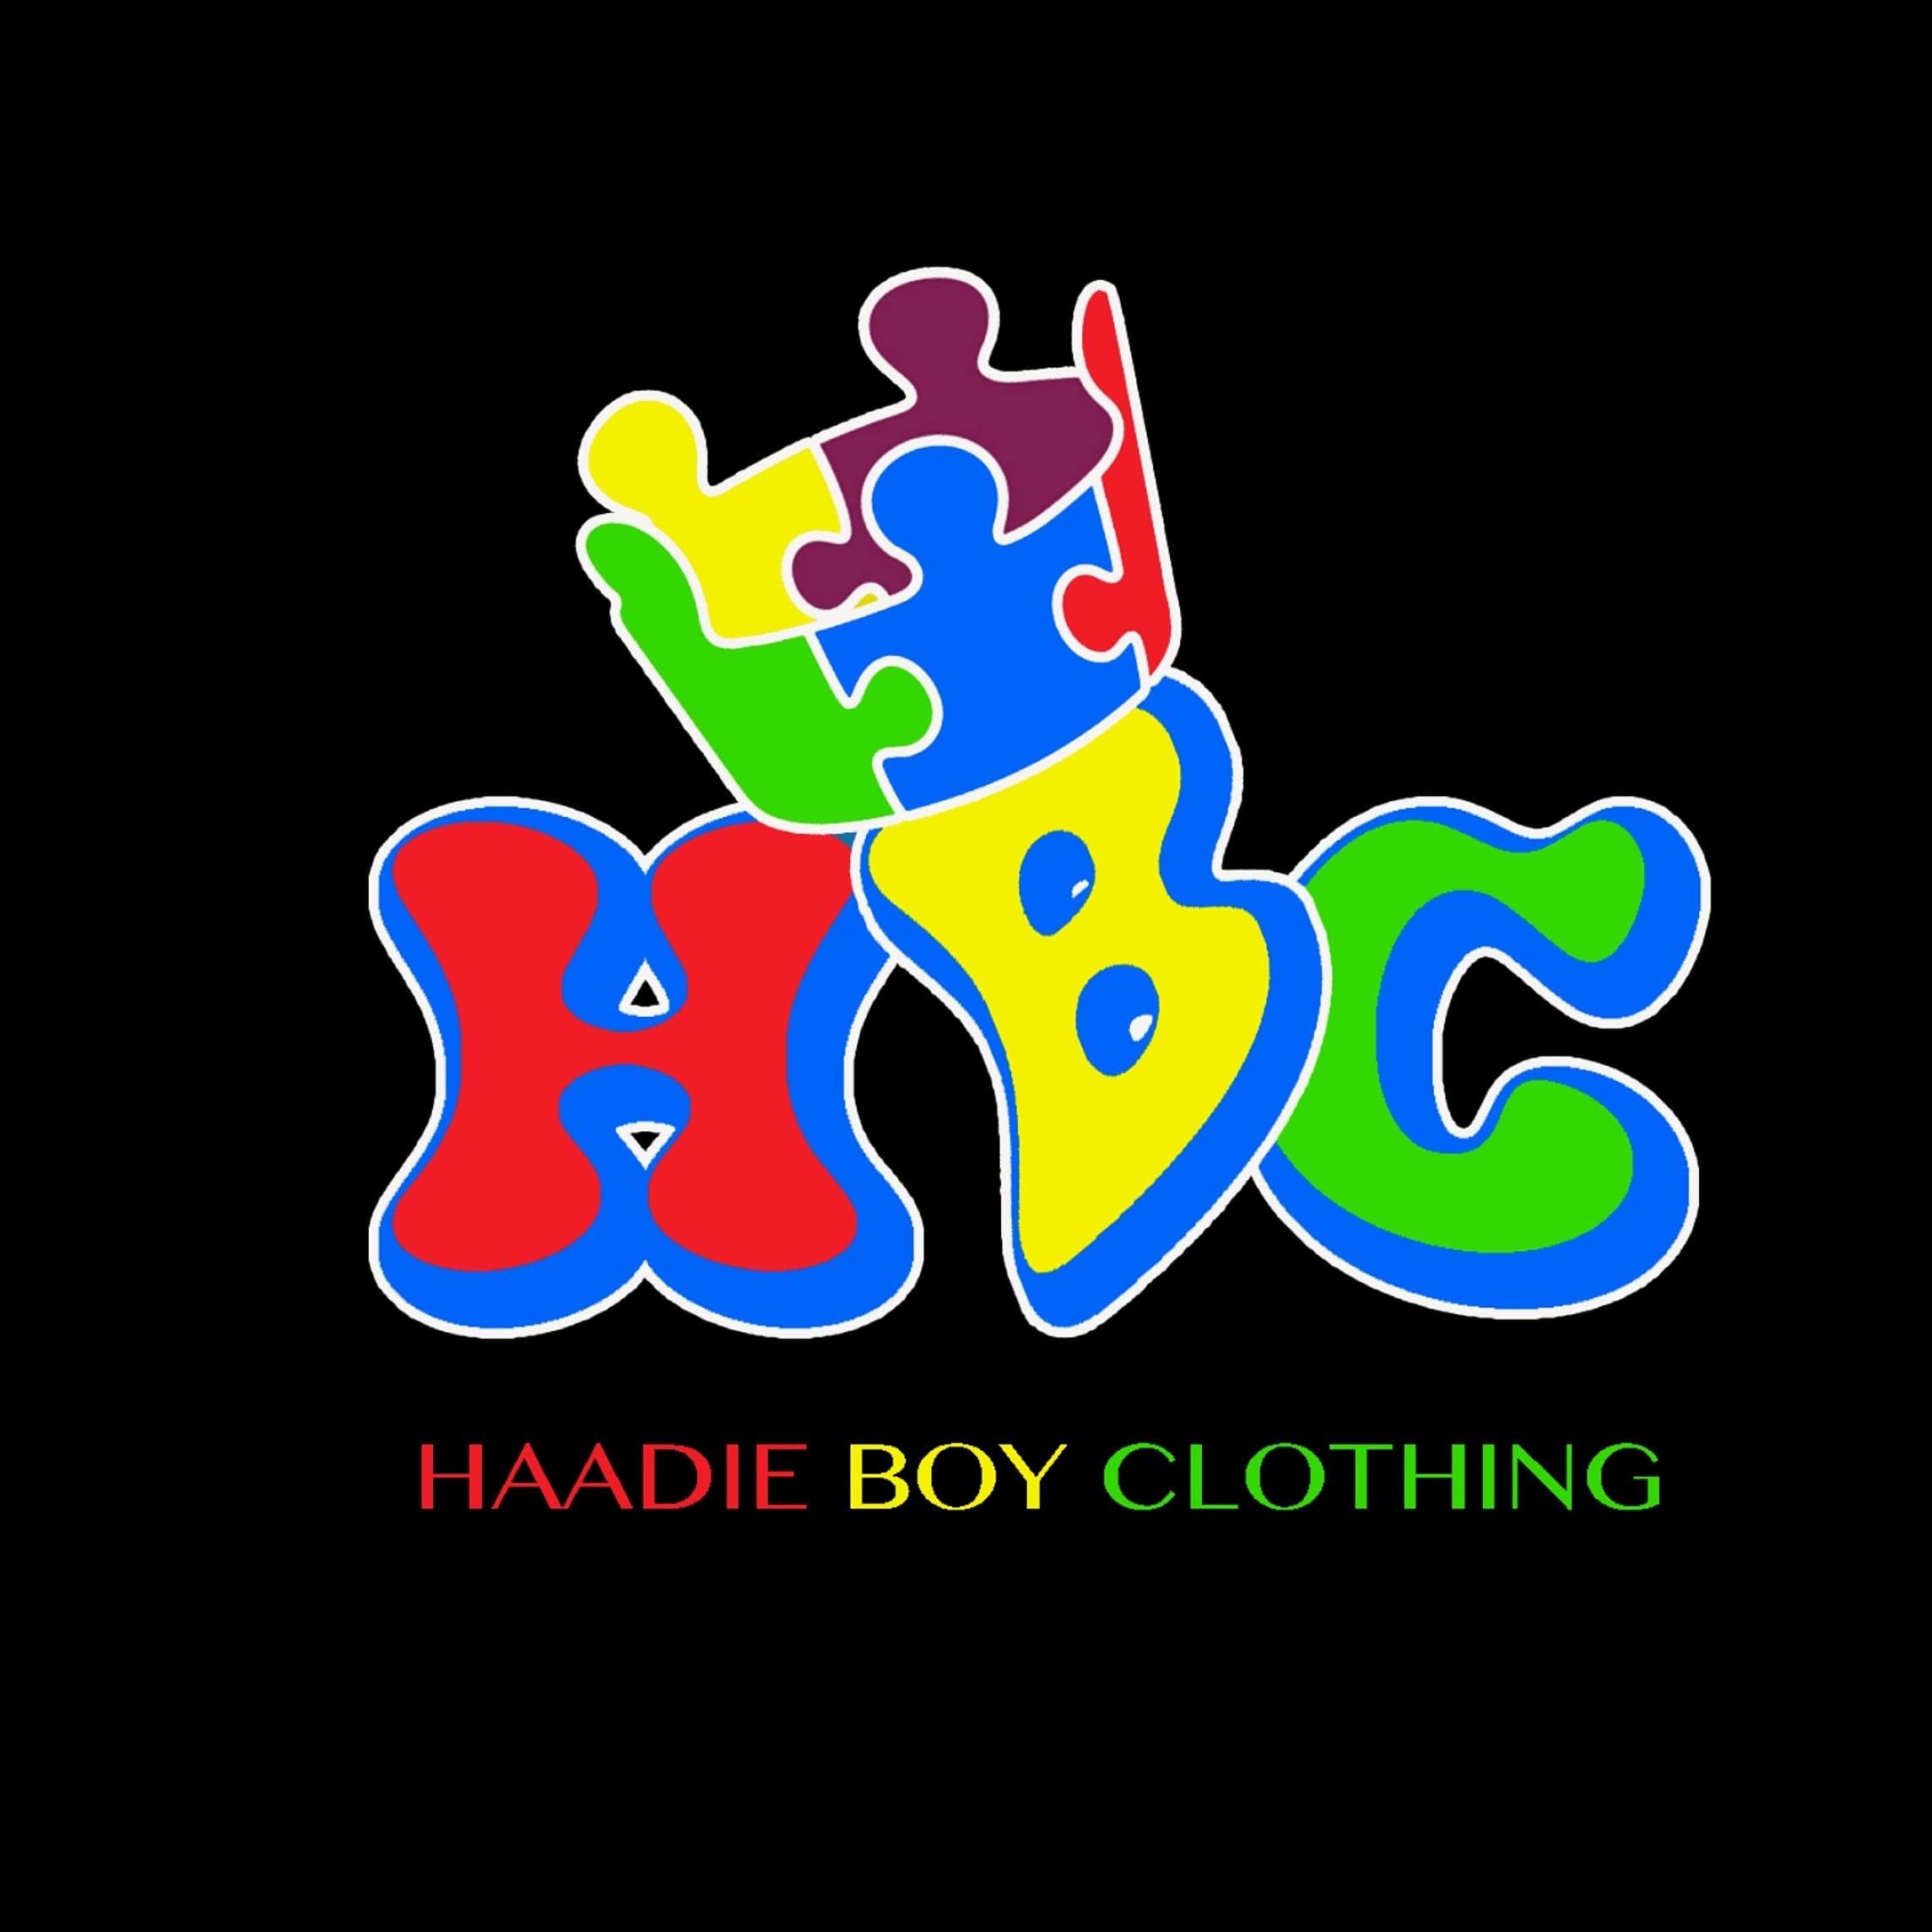 Haadie Boy Clothing